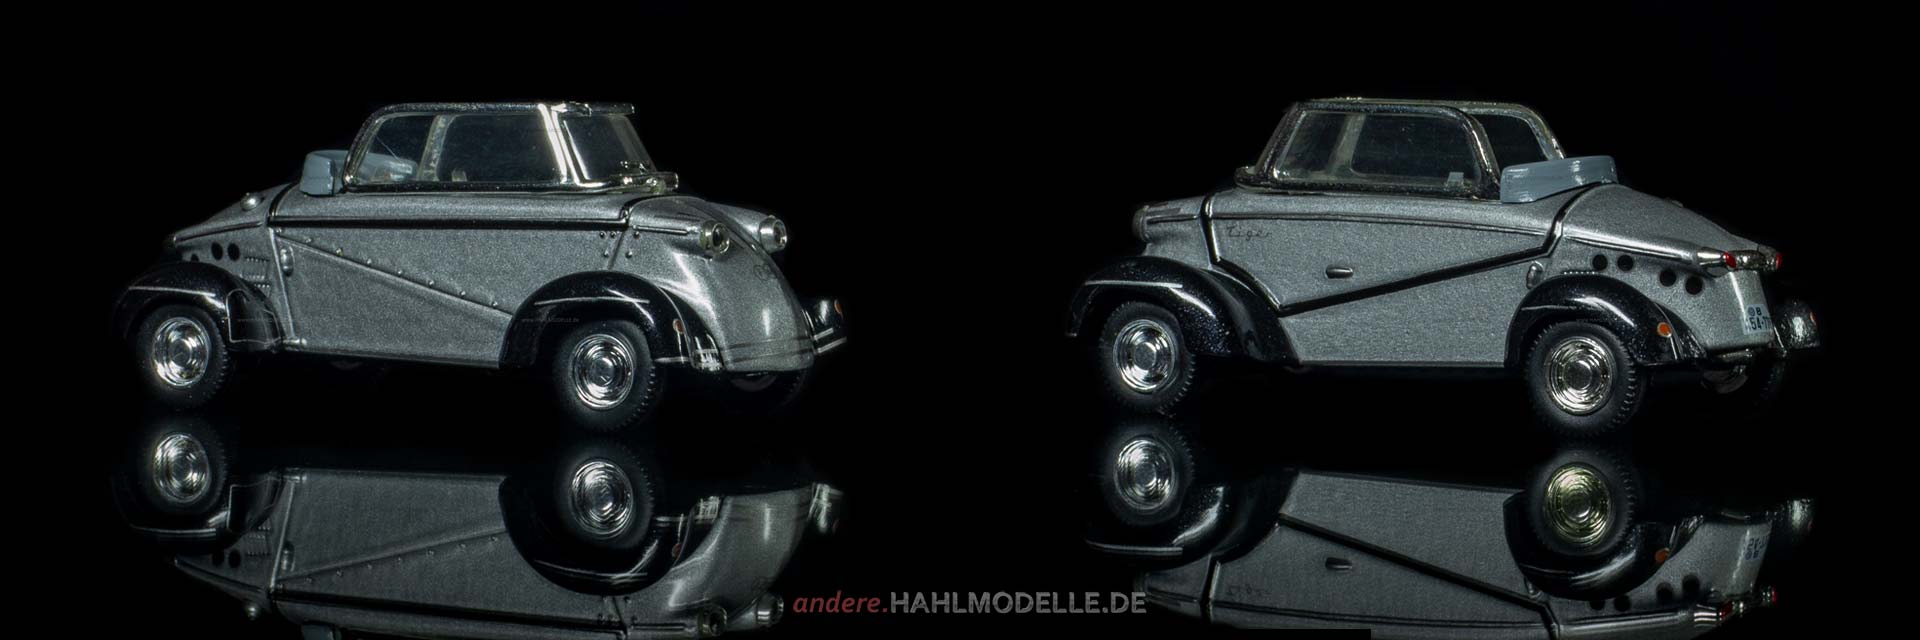 FMR Tg 500 | Rollermobil | Vitesse | 1:43 | www.andere.hahlmodelle.de